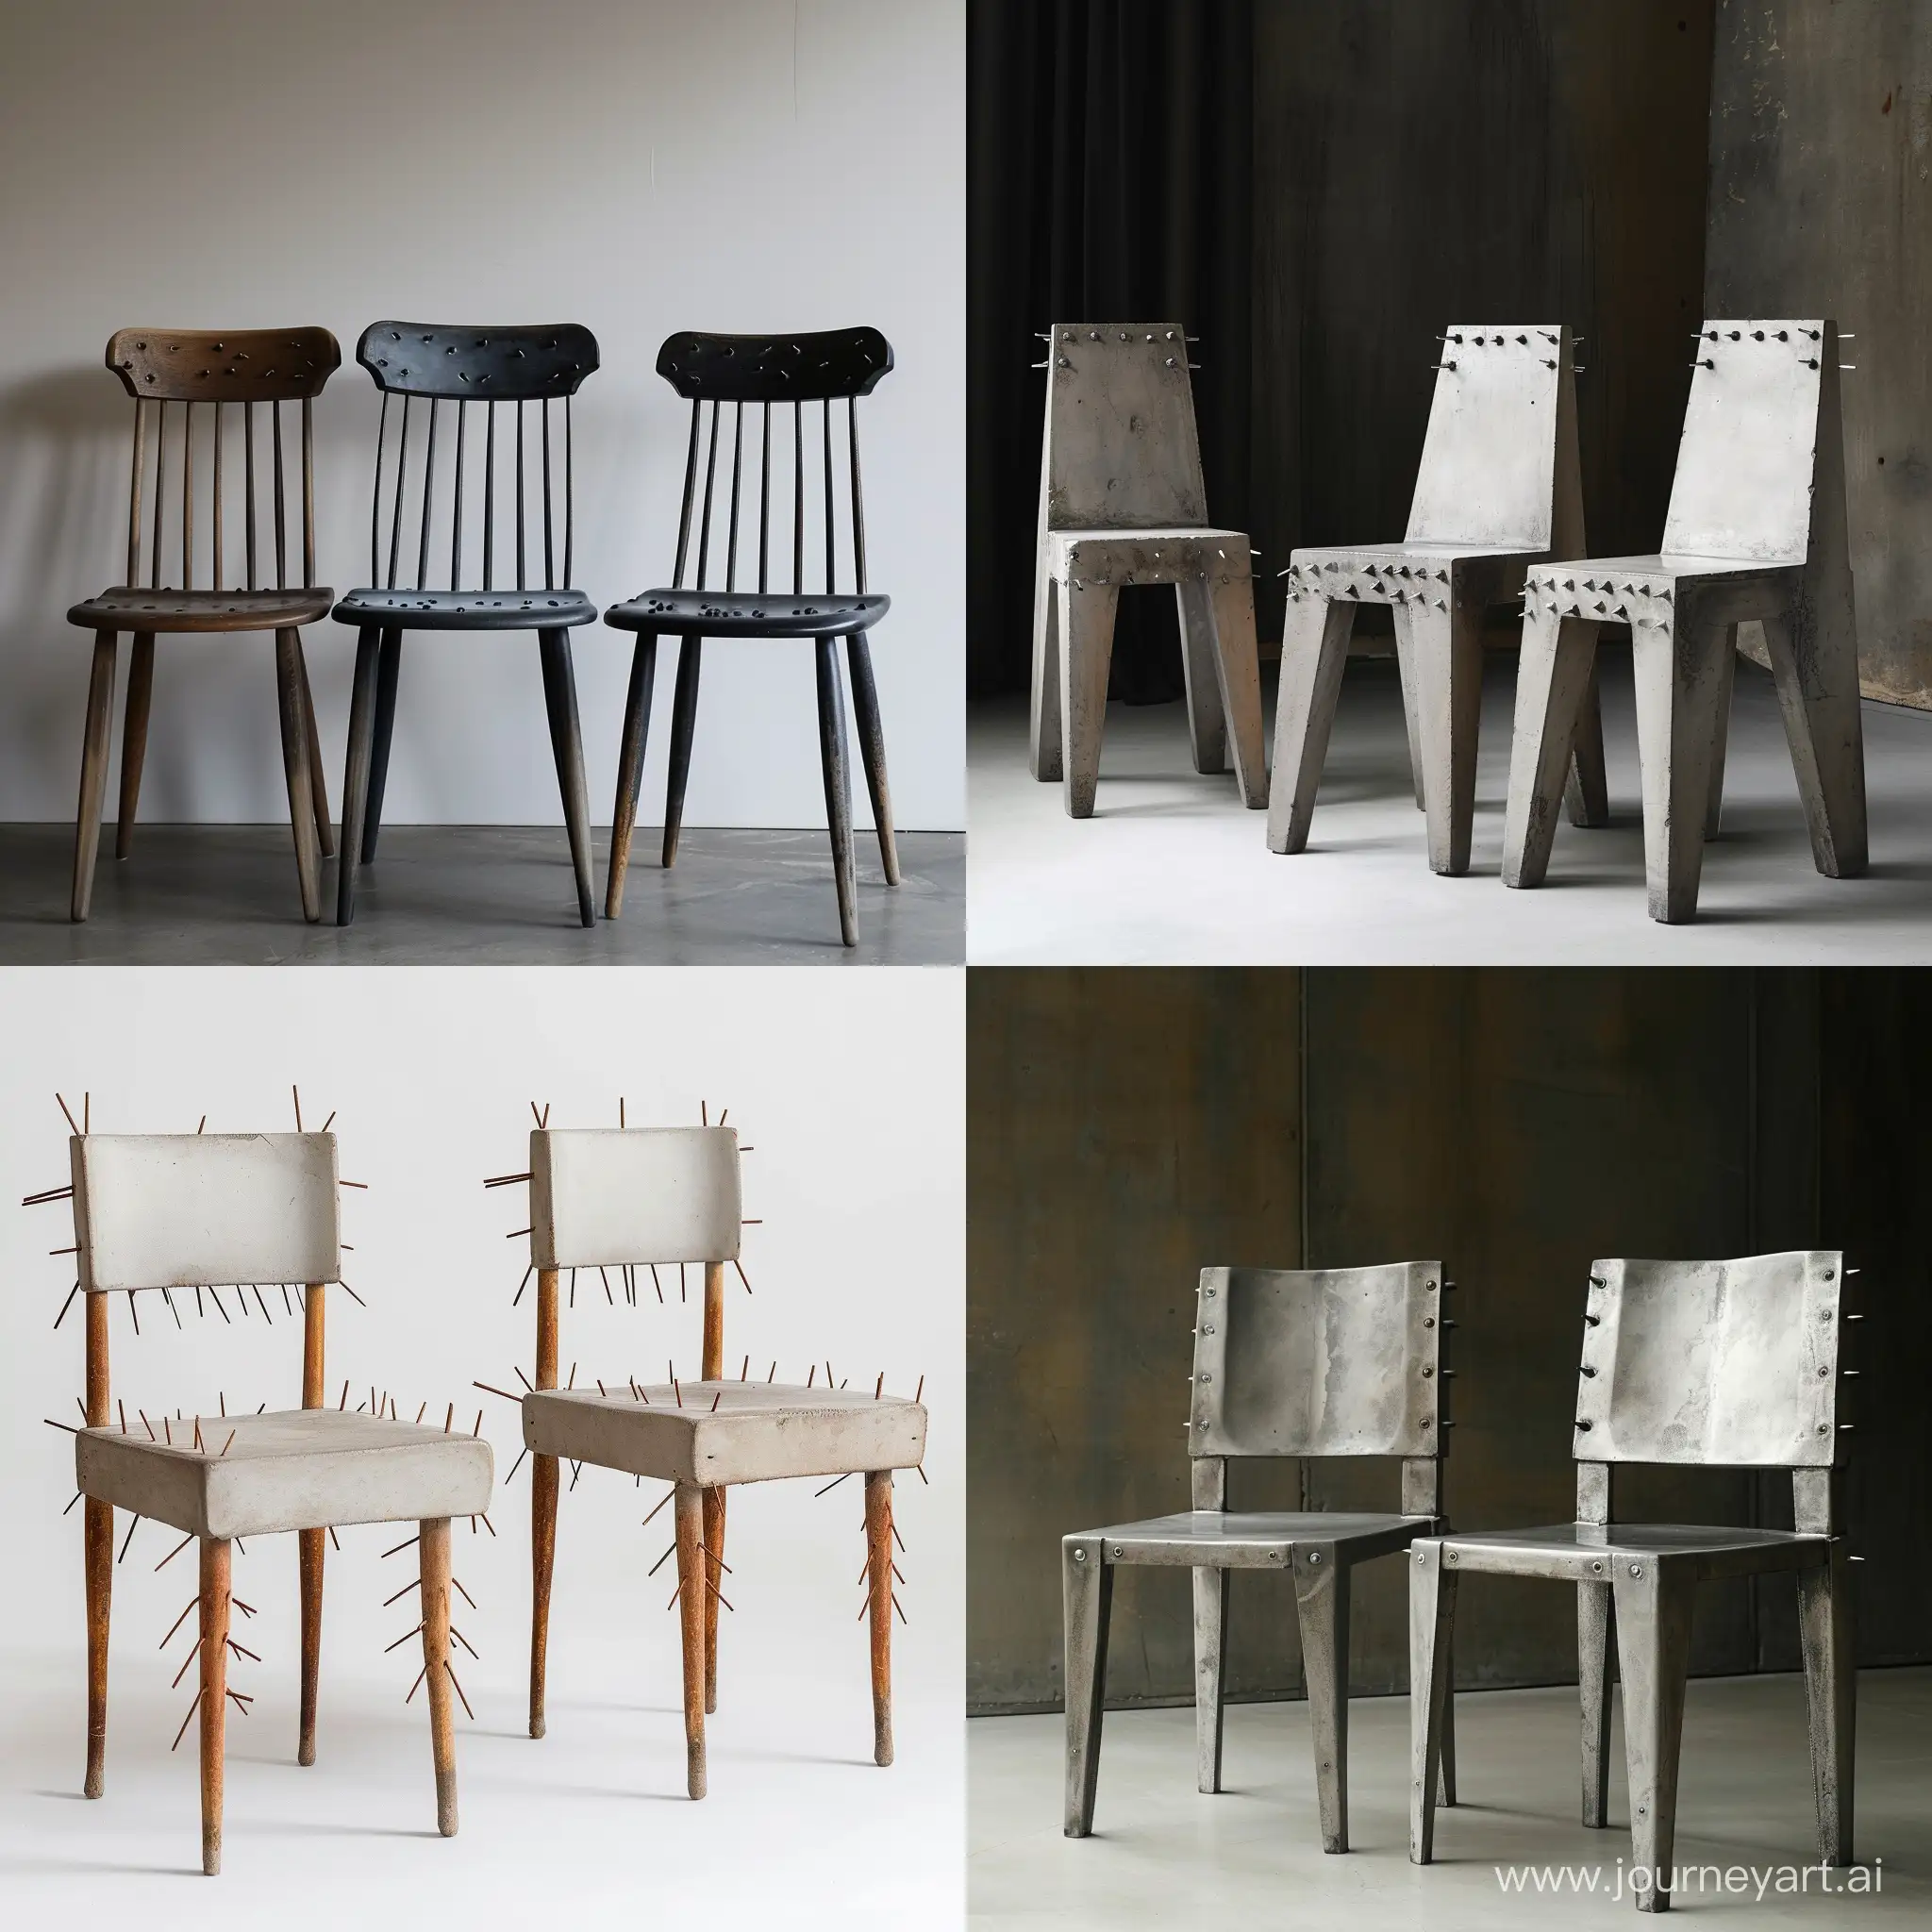 Minimalist-Chairs-Arrangement-Unique-Design-with-Protruding-Nails